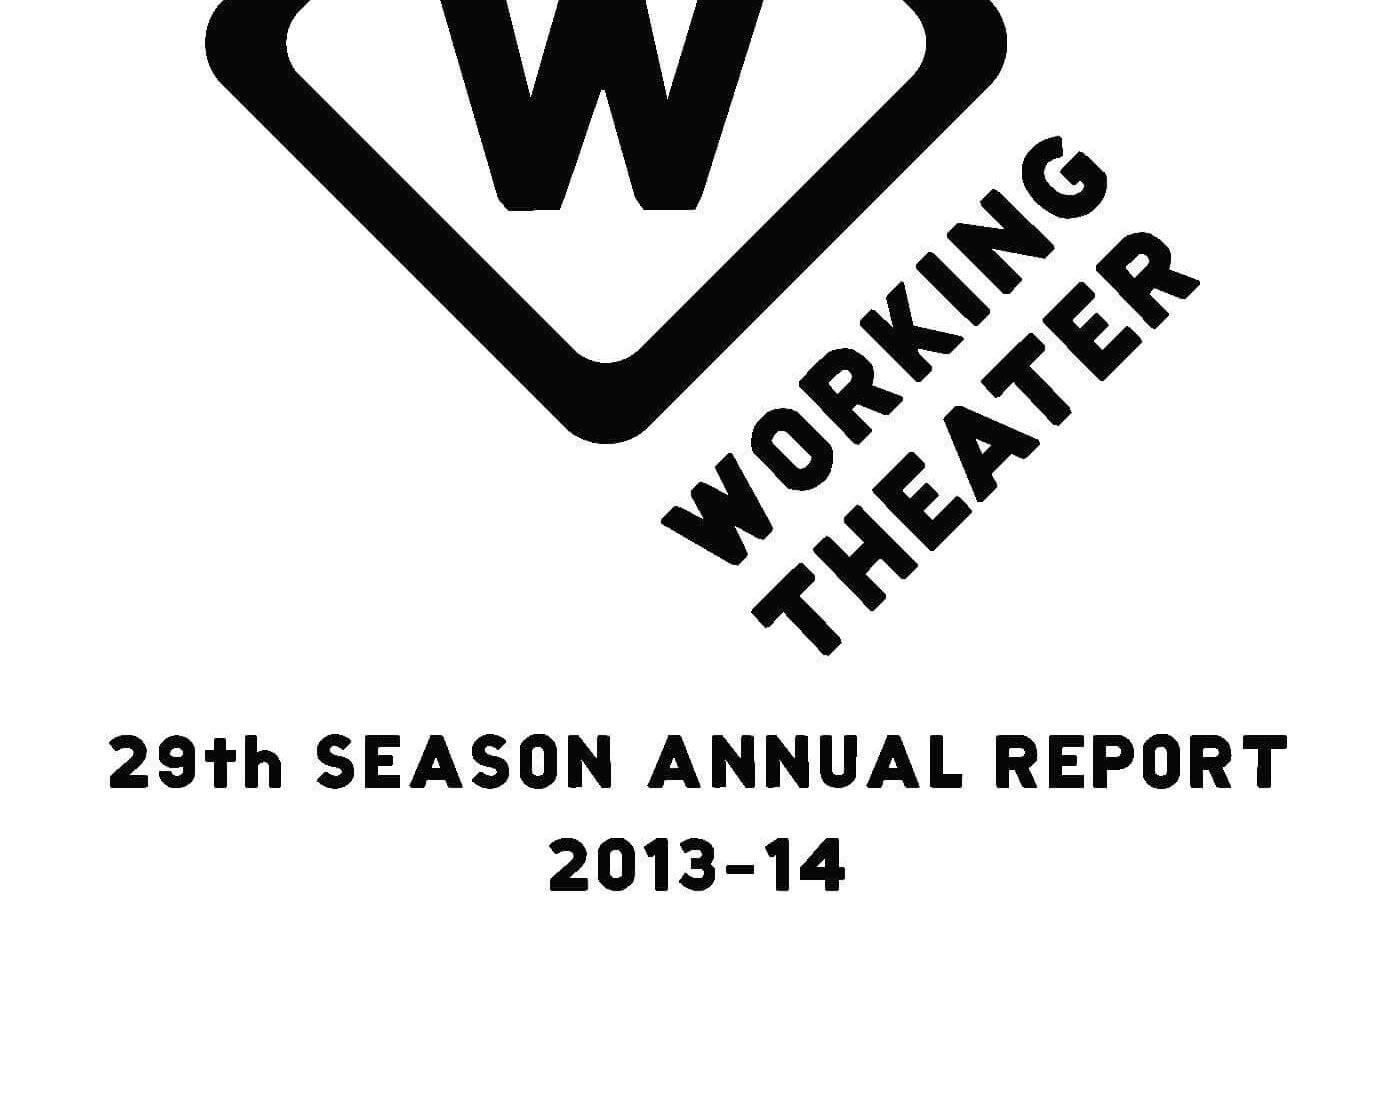 29th season annual report